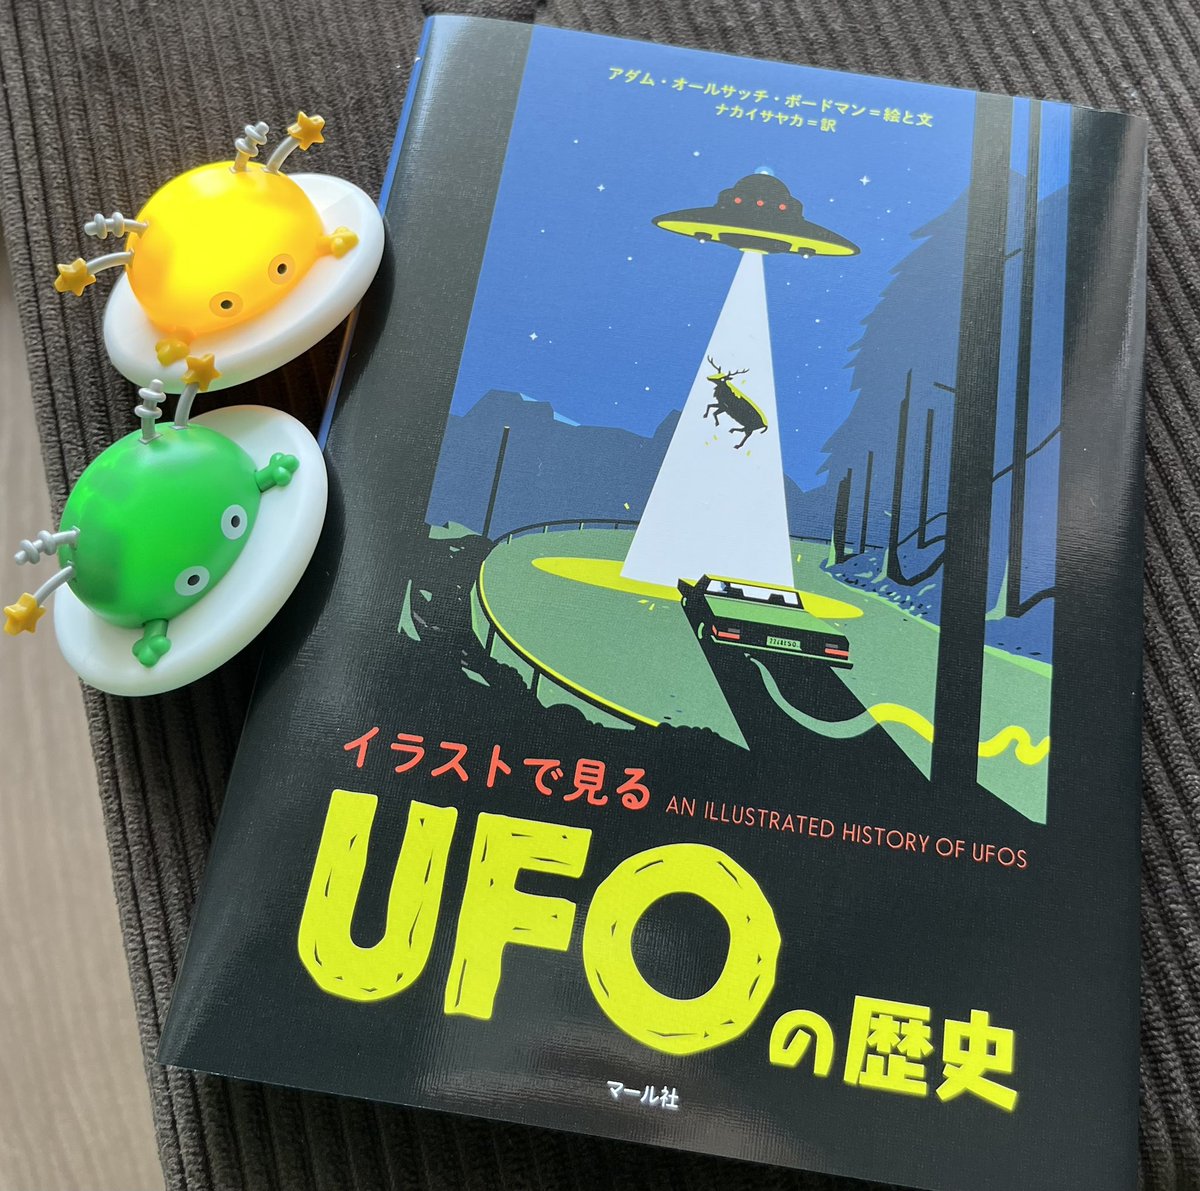 【重版決定🛸💨】
『イラストで見る UFOの歴史』
おかげさまで重版が決定しました‼️お買い上げ下さった皆様、ご友人に薦めて下さった皆様、本当にありがとうございます🙇‍♀️
イラストがポップで楽しい、UFO史入門書として最適の一冊です!📘🔎✨編I

マール社:
https://t.co/vp8o0eT9M3 